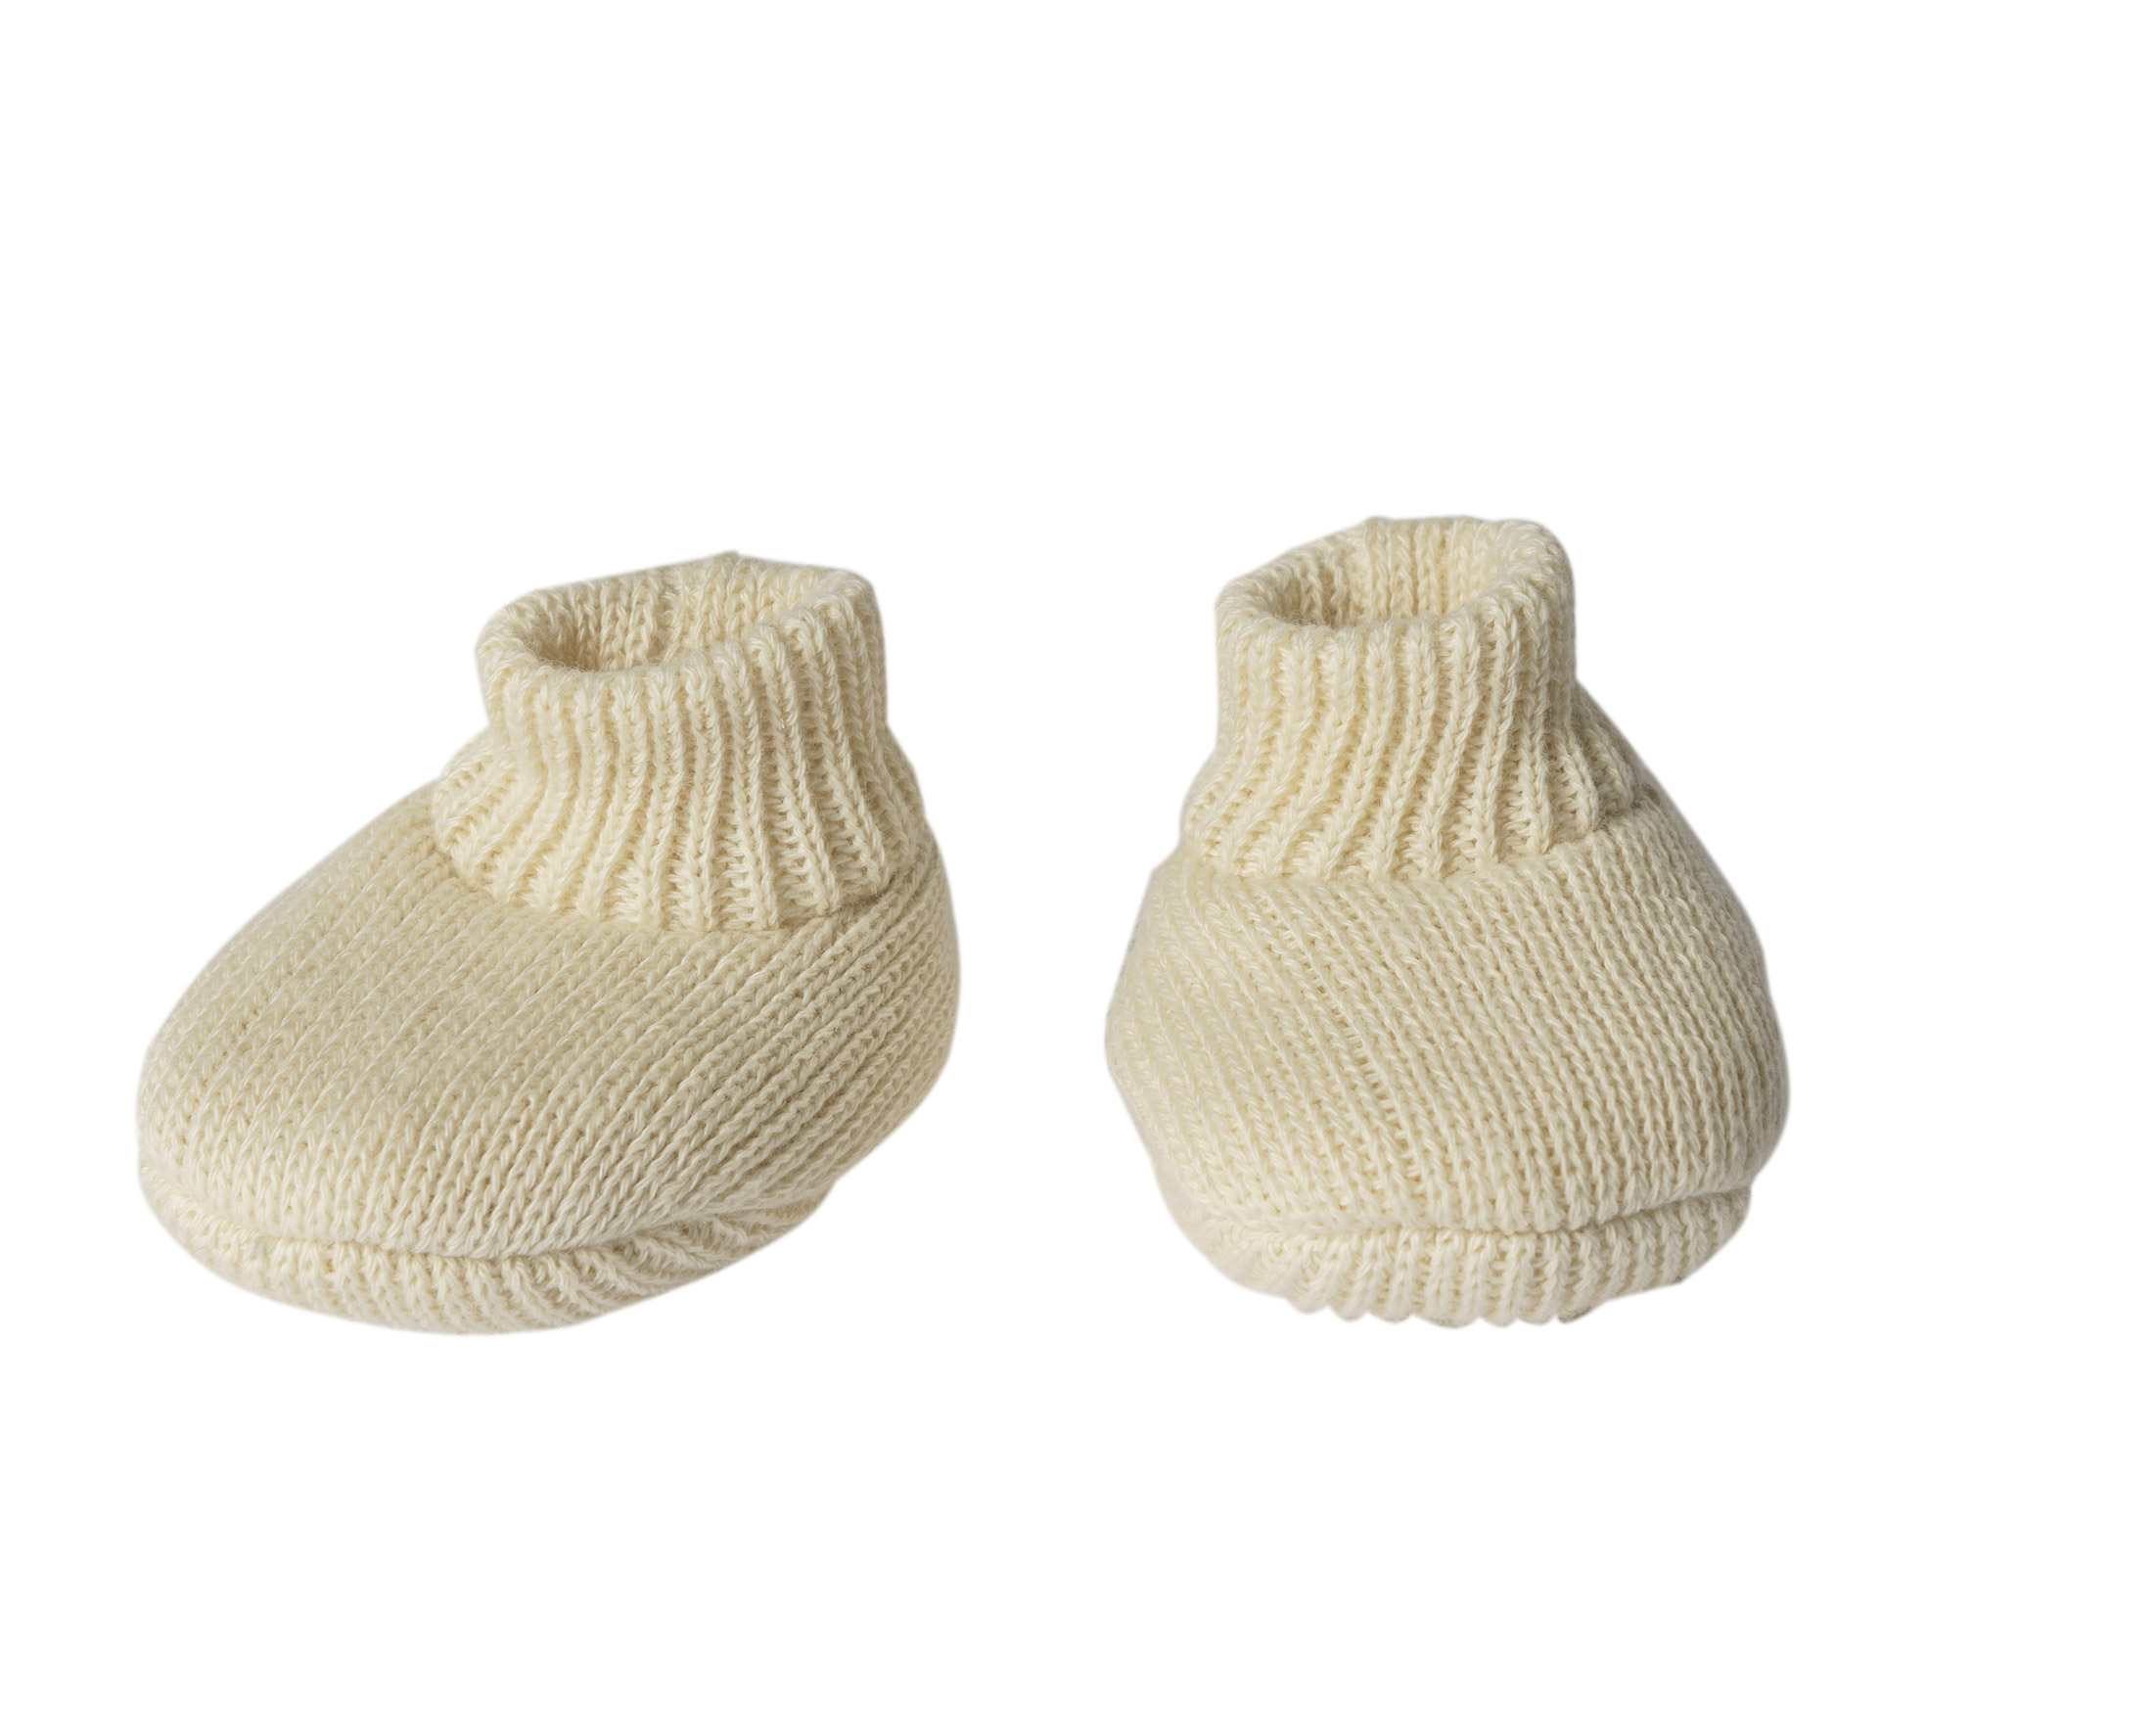 Puppen-Strickset mit Bommelmütze und Strickschuhen aus 100 % Bio-Baumwolle, ecru, 2-teilig, Gr. 28-35 cm